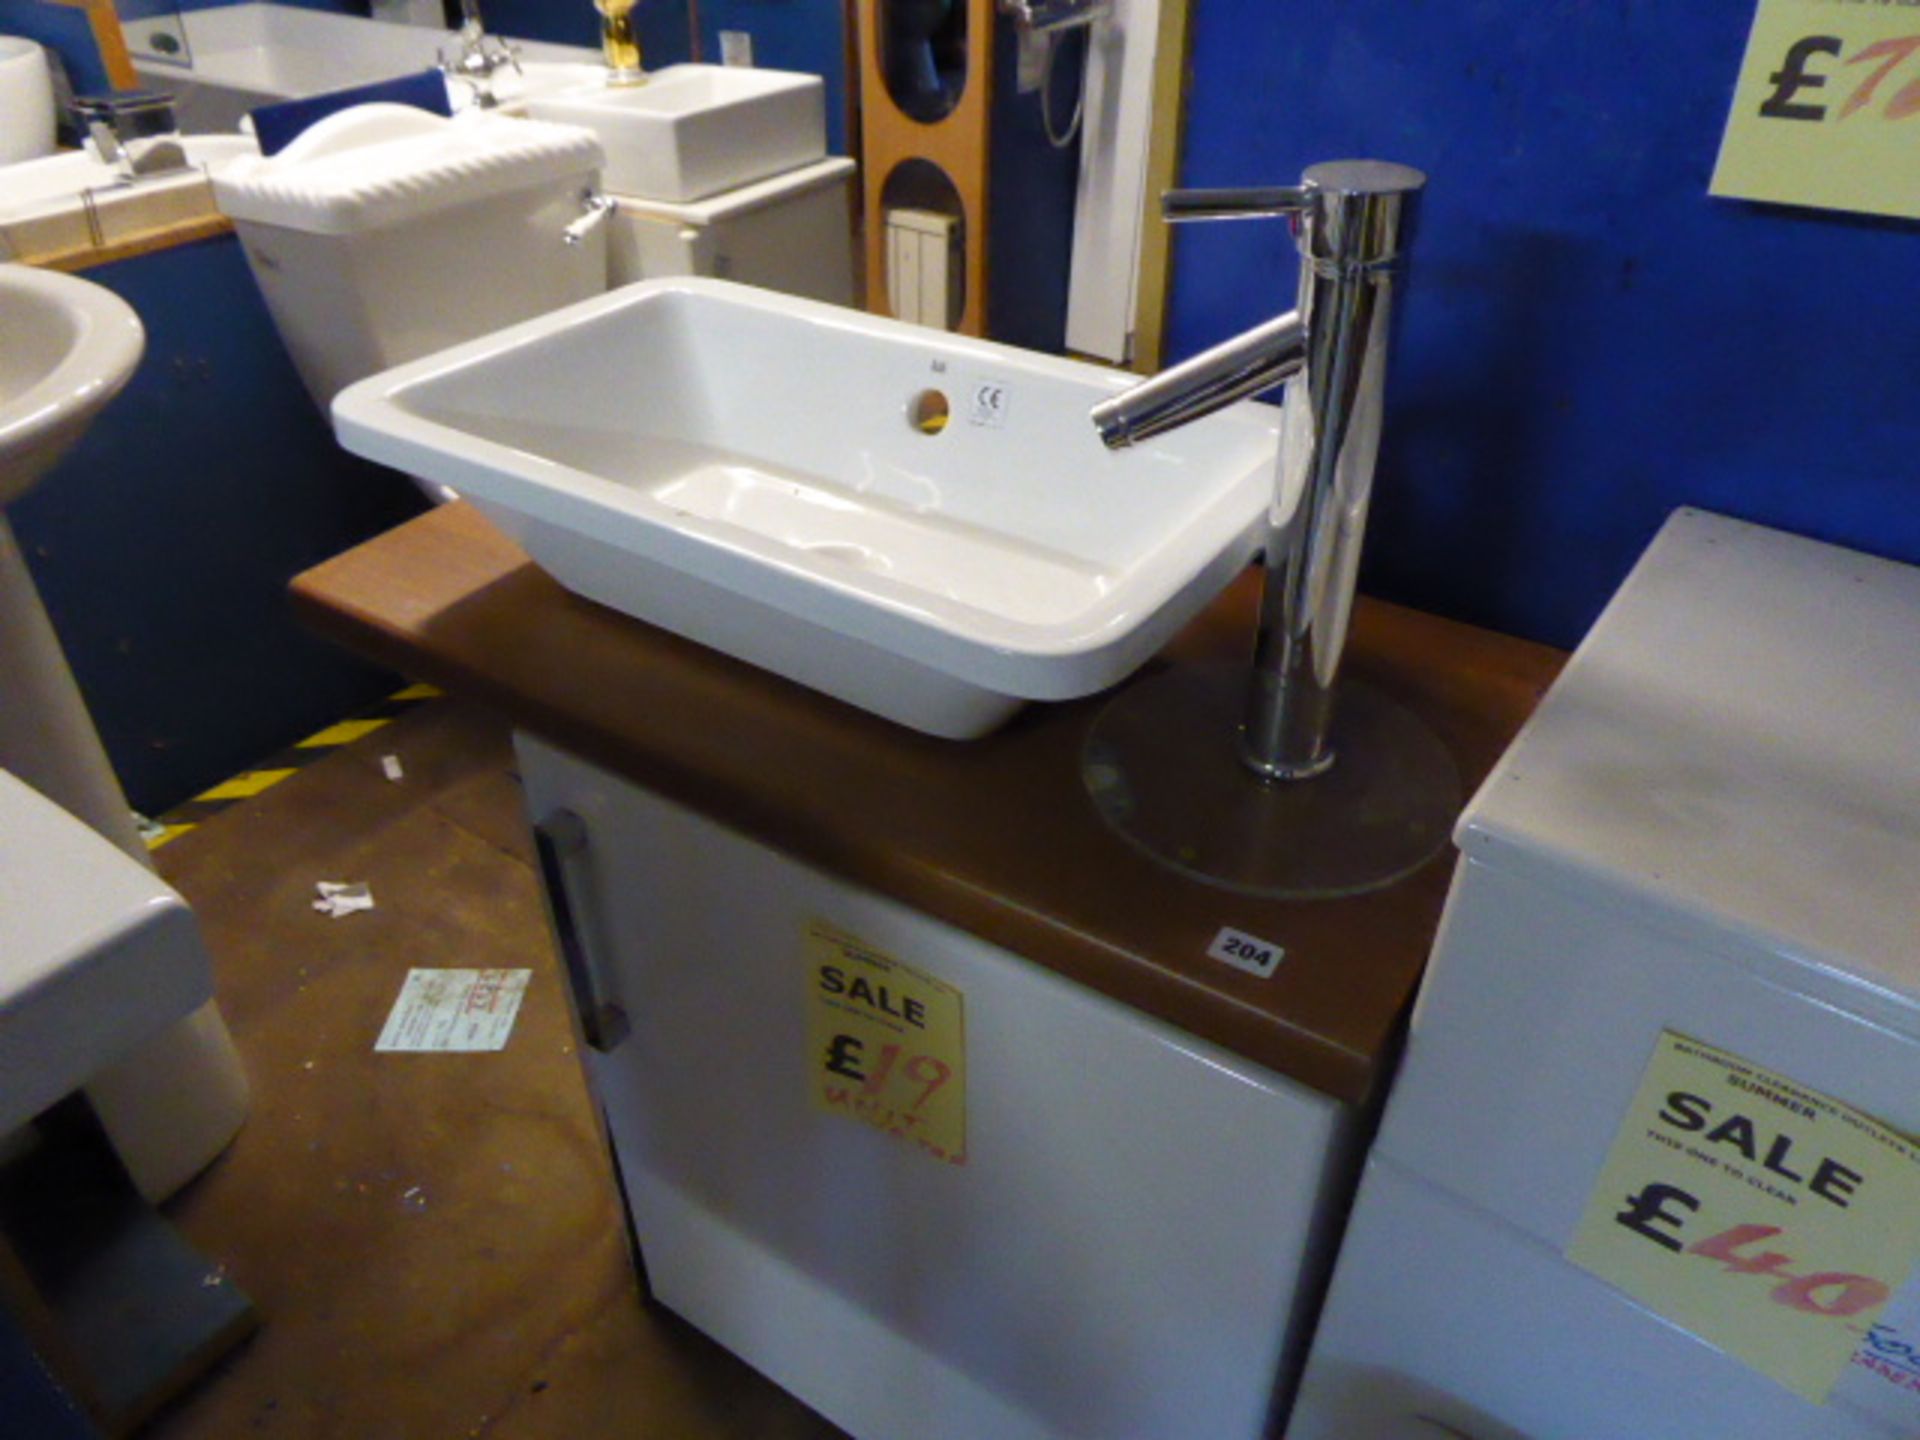 Small single door vanity base unit with RAK Rectangular ceramic basin and pillar mixer tap